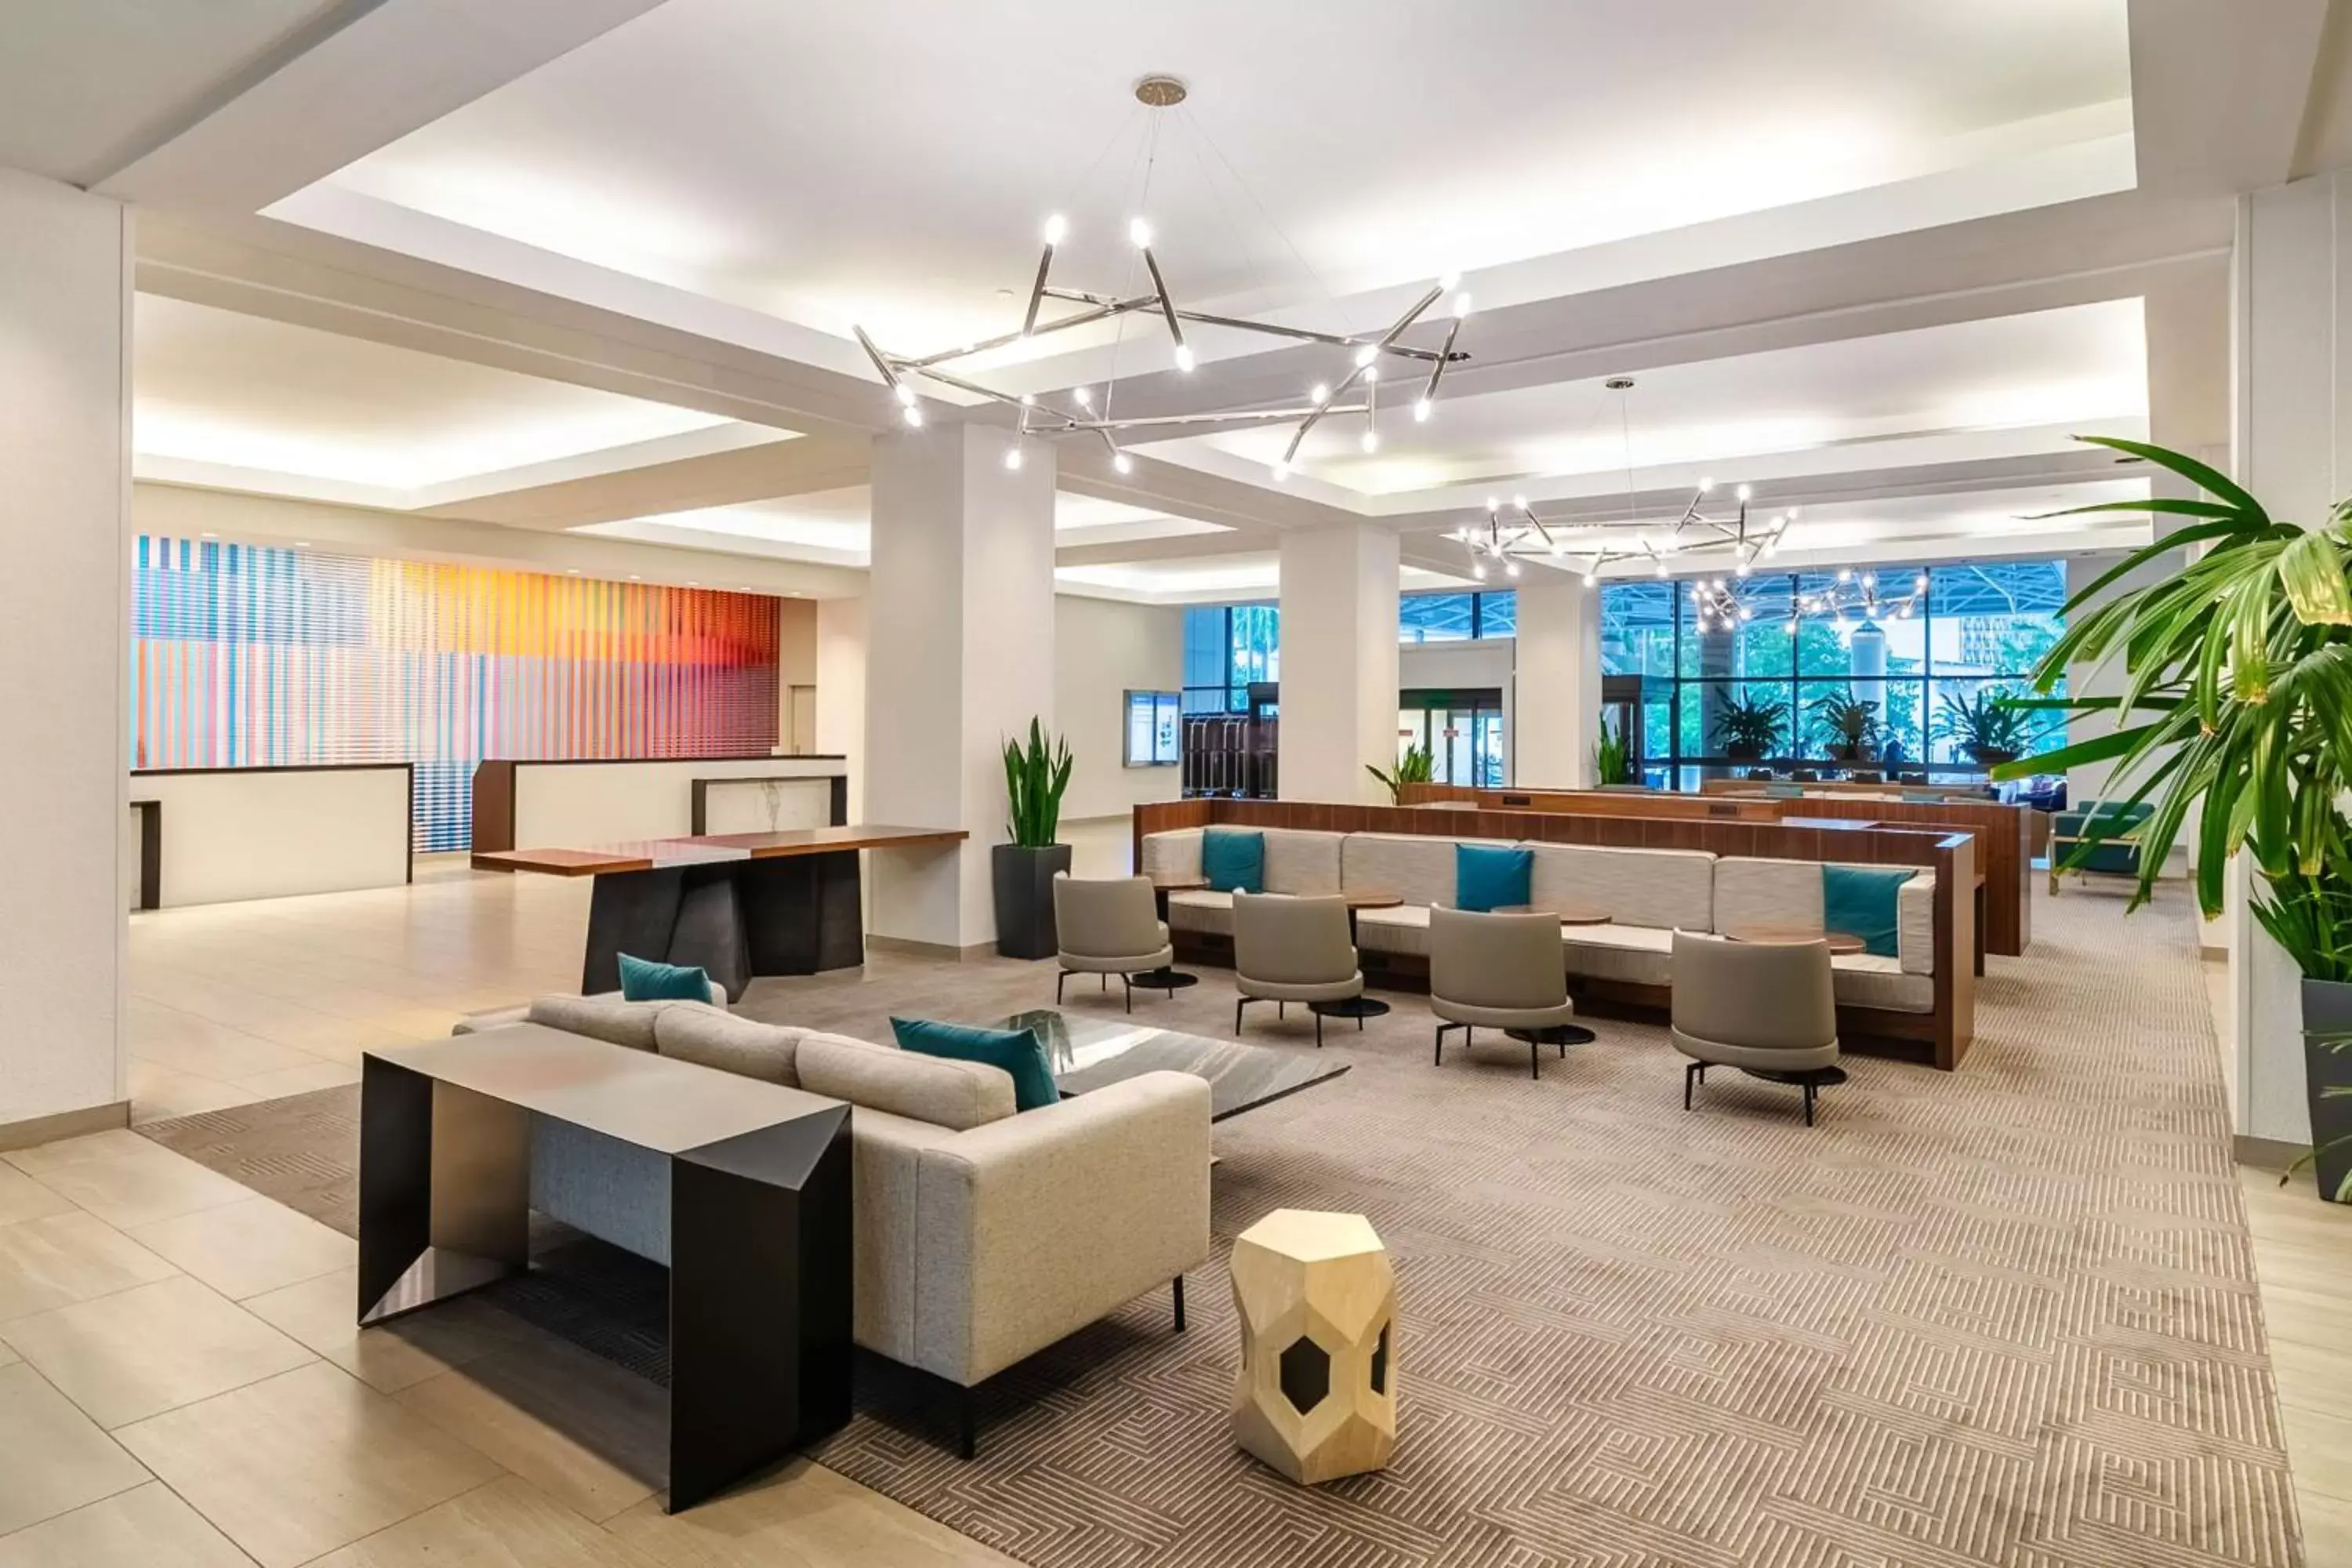 Lobby or reception, Lobby/Reception in Hyatt Regency Miami